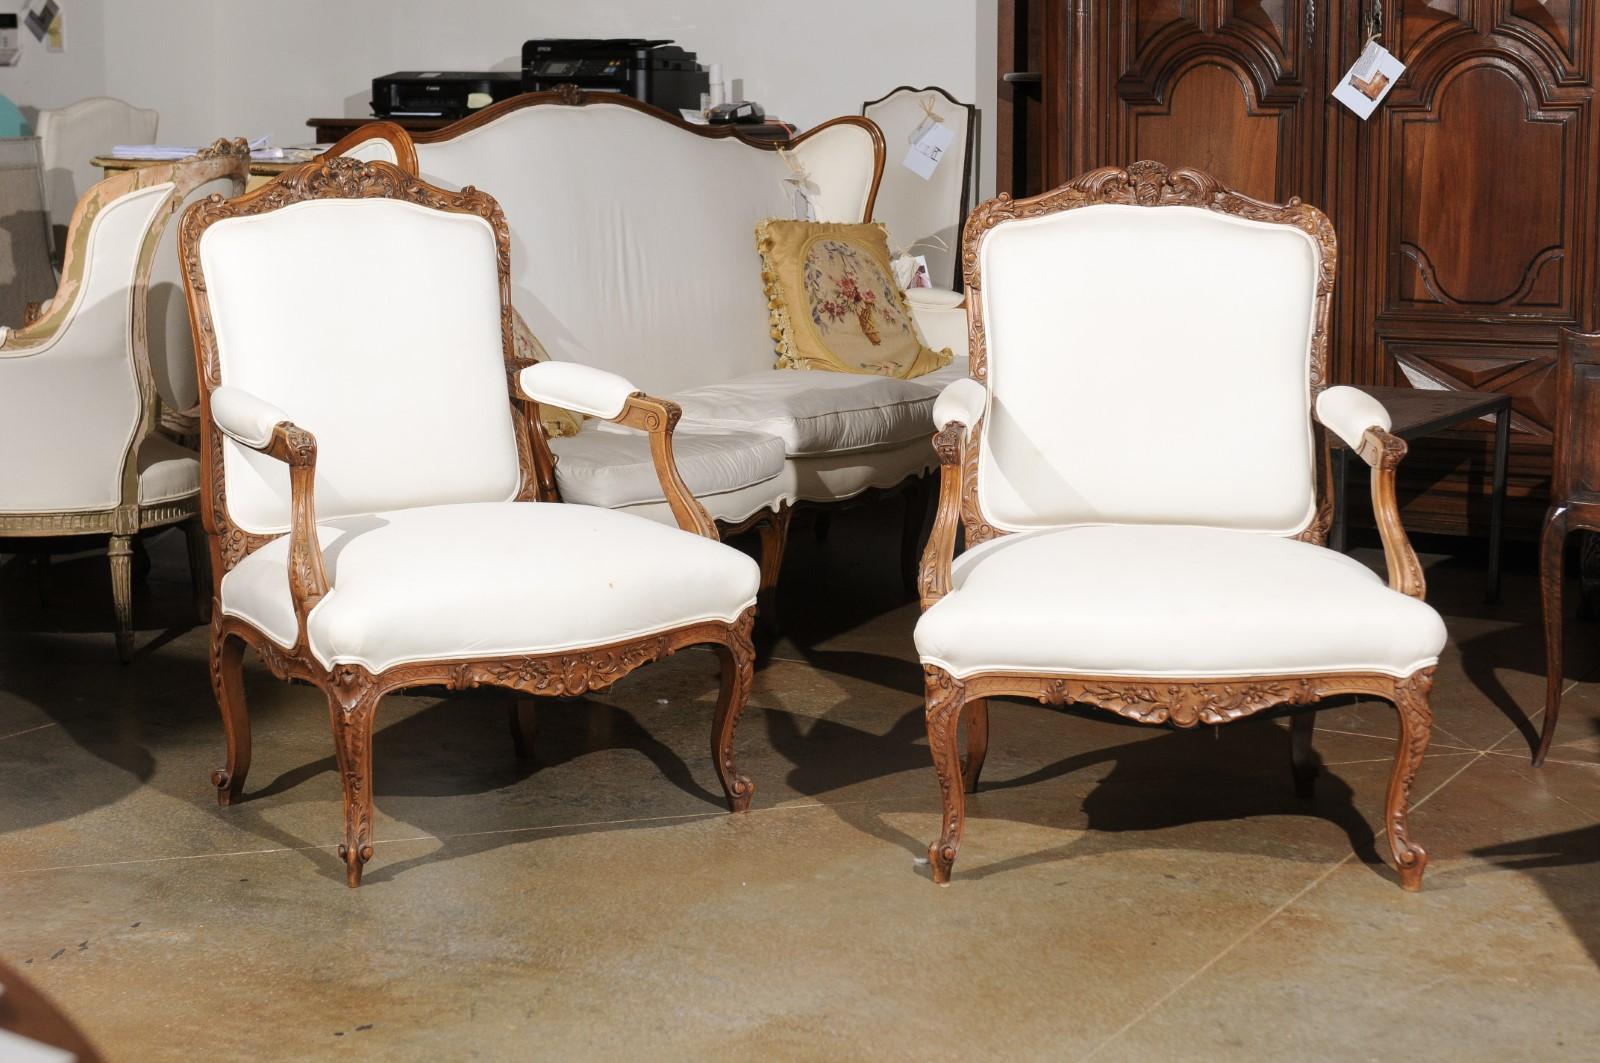 Paire de fauteuils italiens de style rococo en noyer du XIXe siècle, avec jupes sculptées, pieds cabriole et tapisserie. Née en Italie au XIXe siècle, cette paire de fauteuils de style rococo présente un dossier légèrement incliné, orné de motifs de